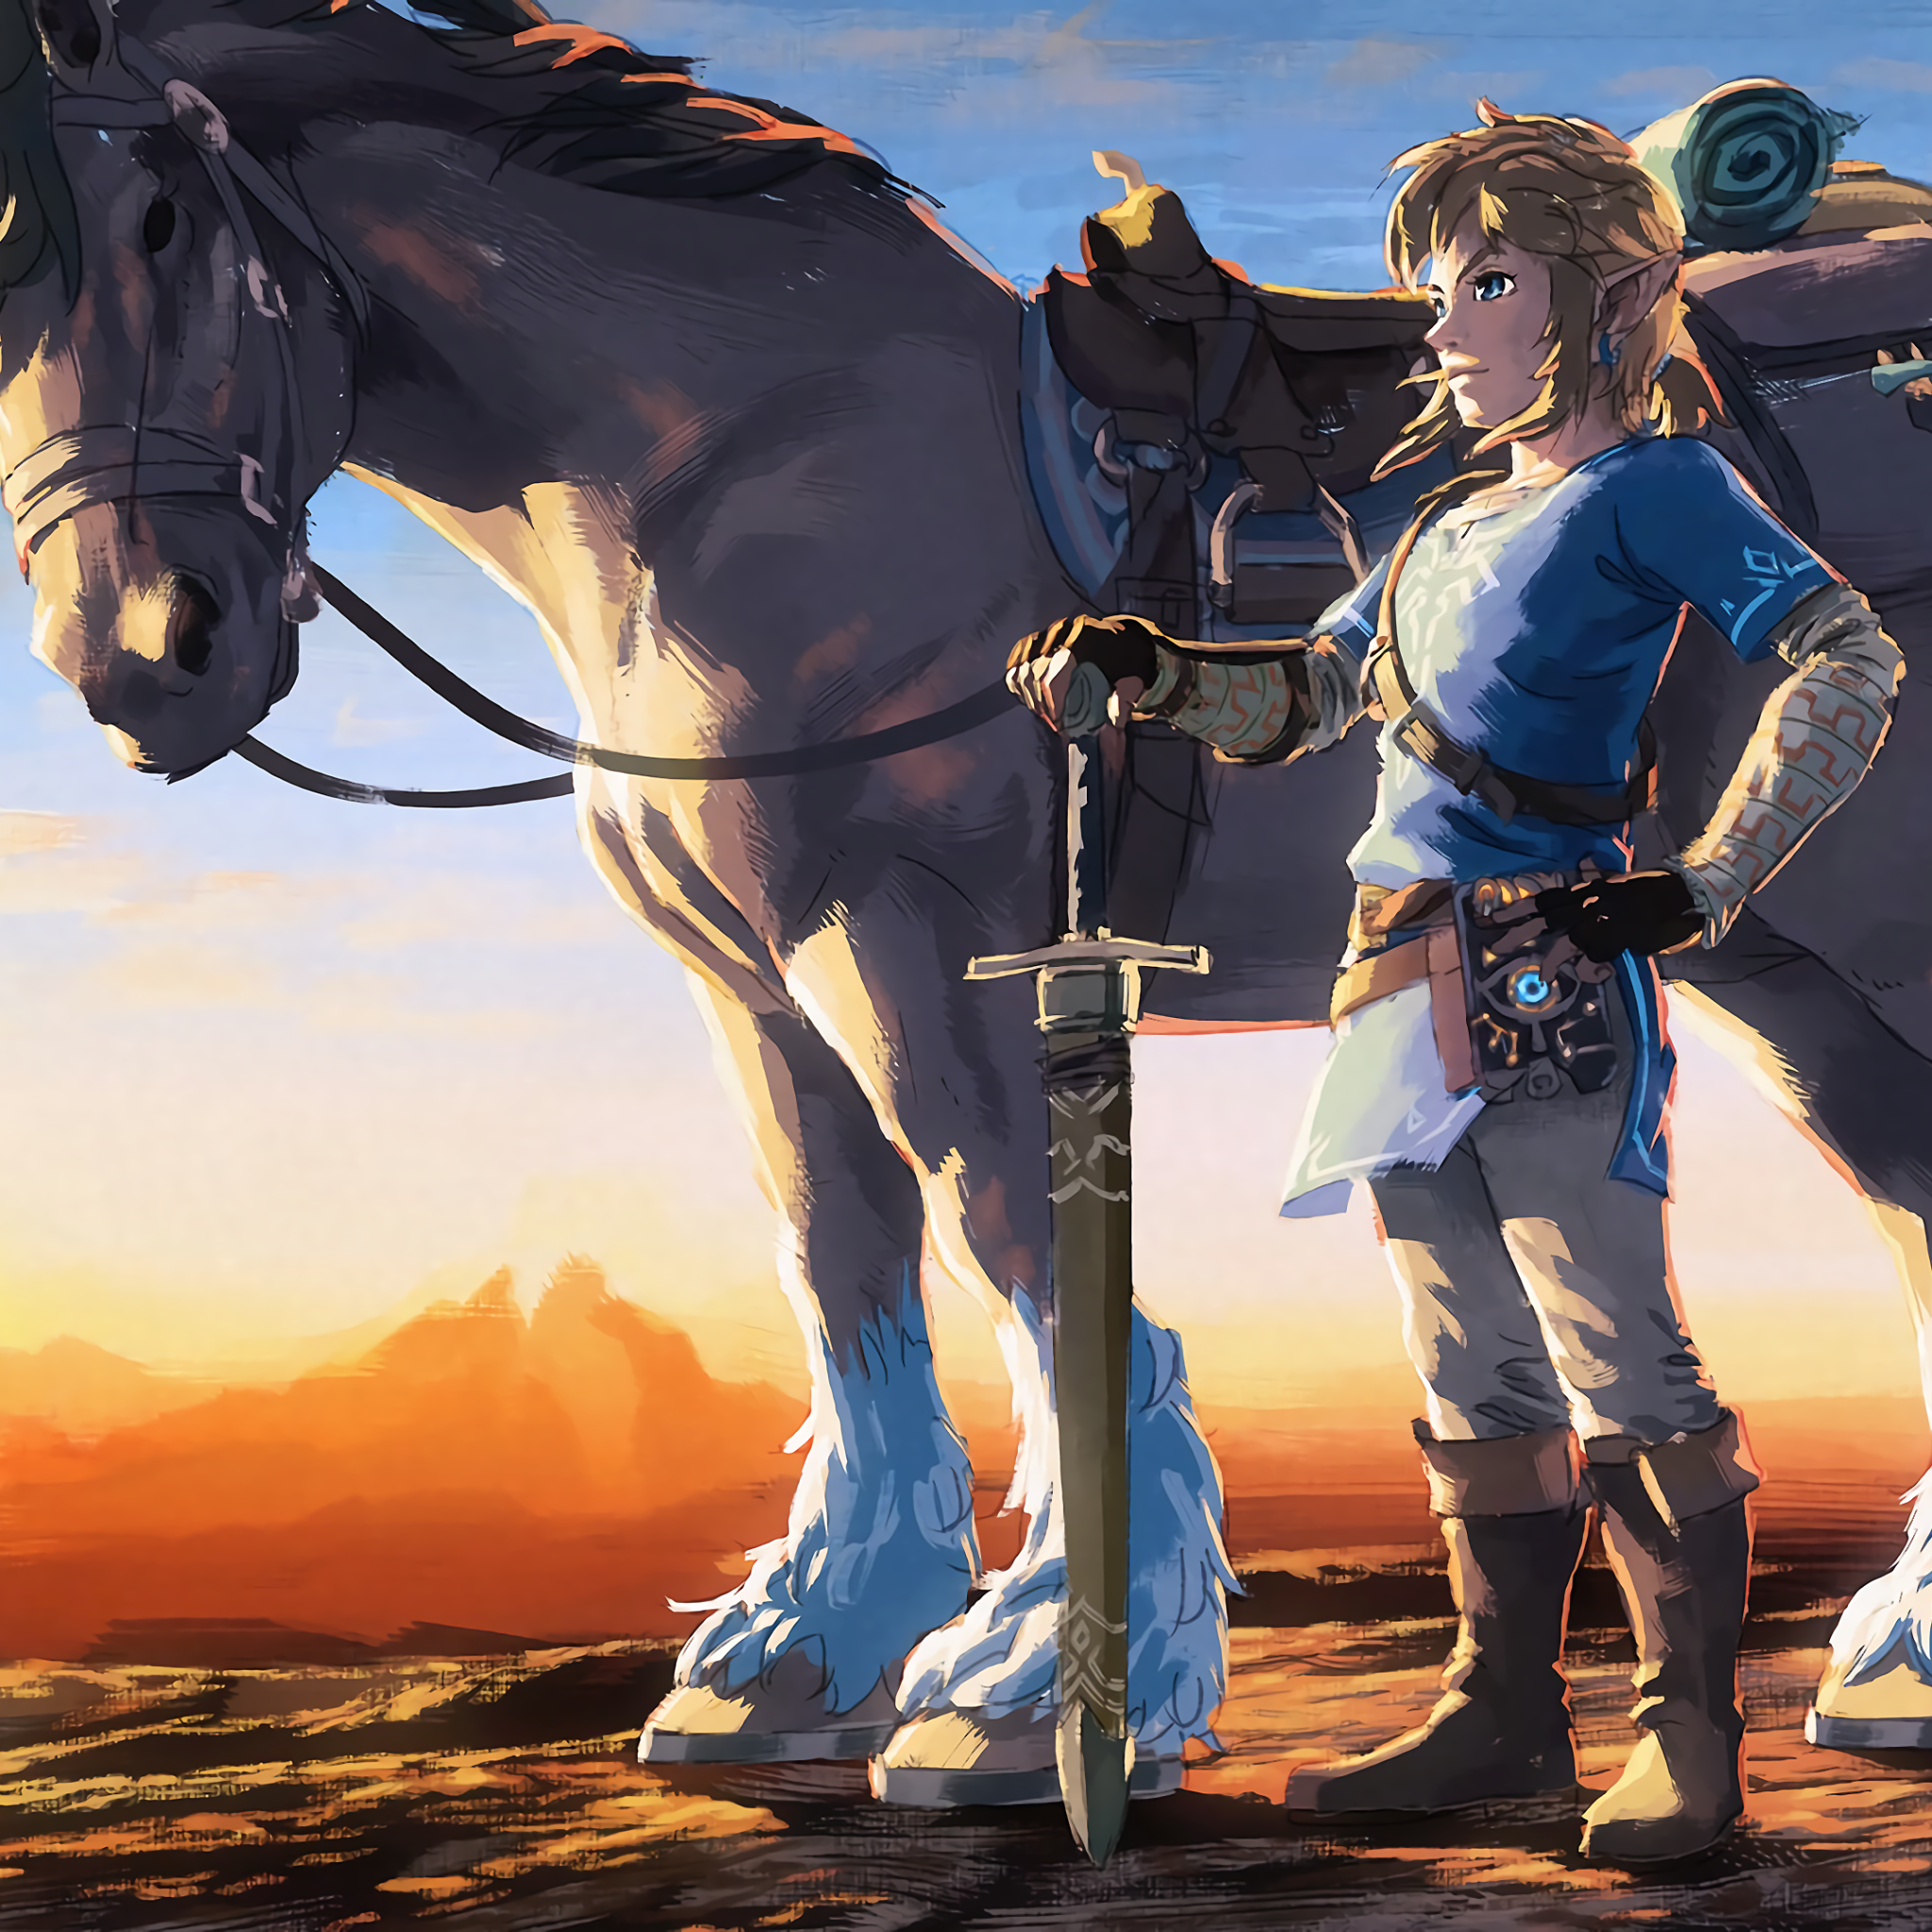 The Legend of Zelda: Breath of the Wild Pfp